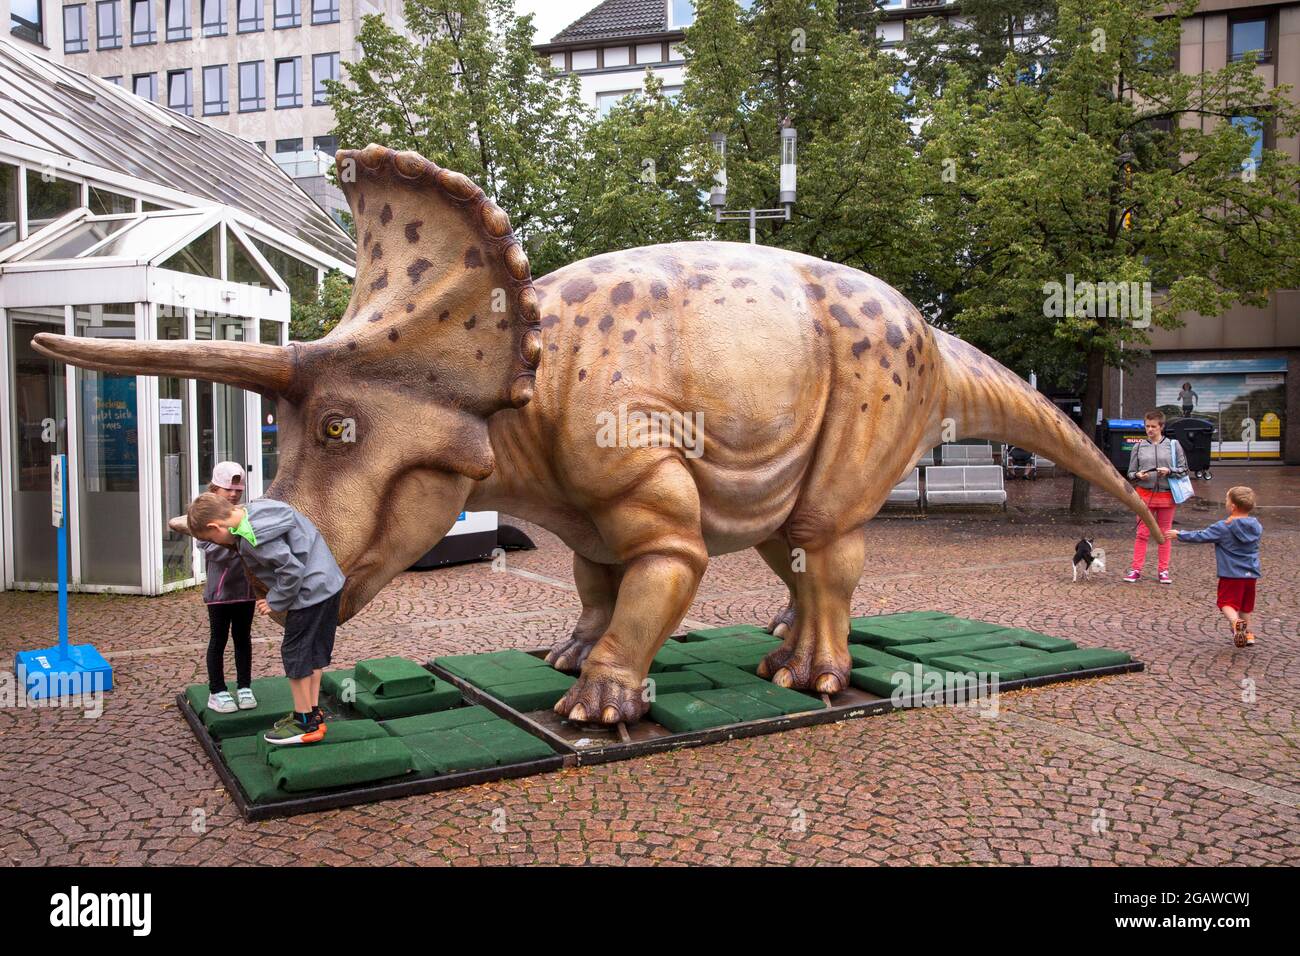 Modèles de dinosaures grandeur nature exposés à divers endroits dans le centre-ville de Bochum, ici: Triceratops, Rhénanie-du-Nord-Westphalie, Allemagne. Lebensgro Banque D'Images